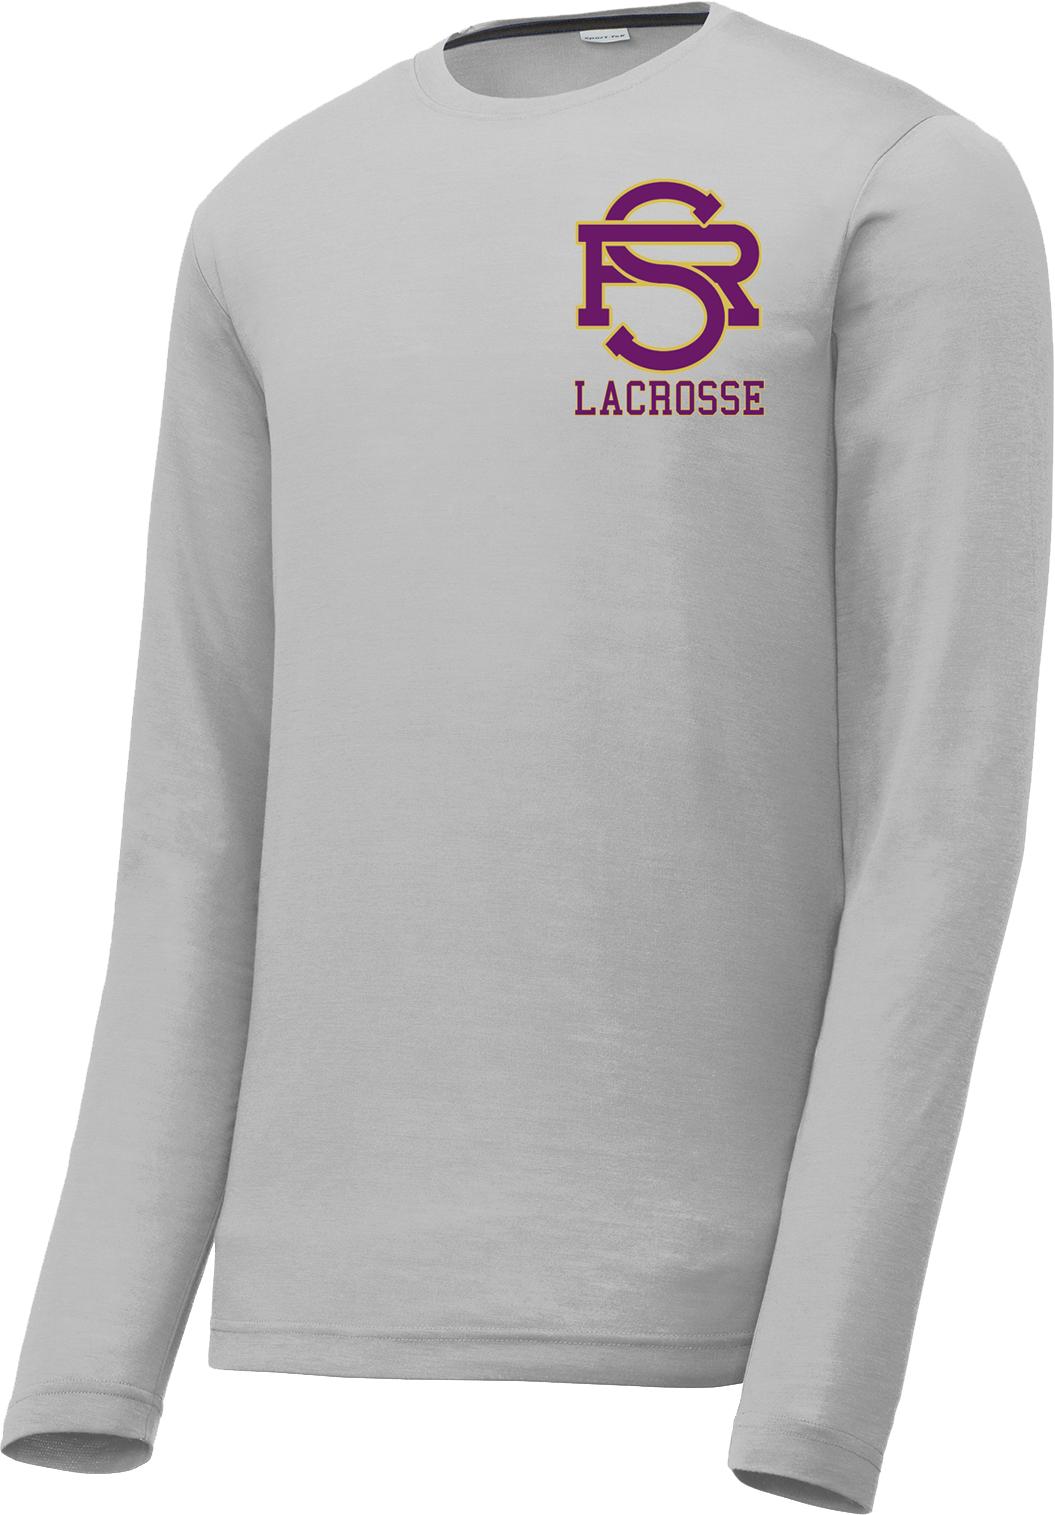 Saint Raphael Lacrosse Long Sleeve CottonTouch Performance Shirt